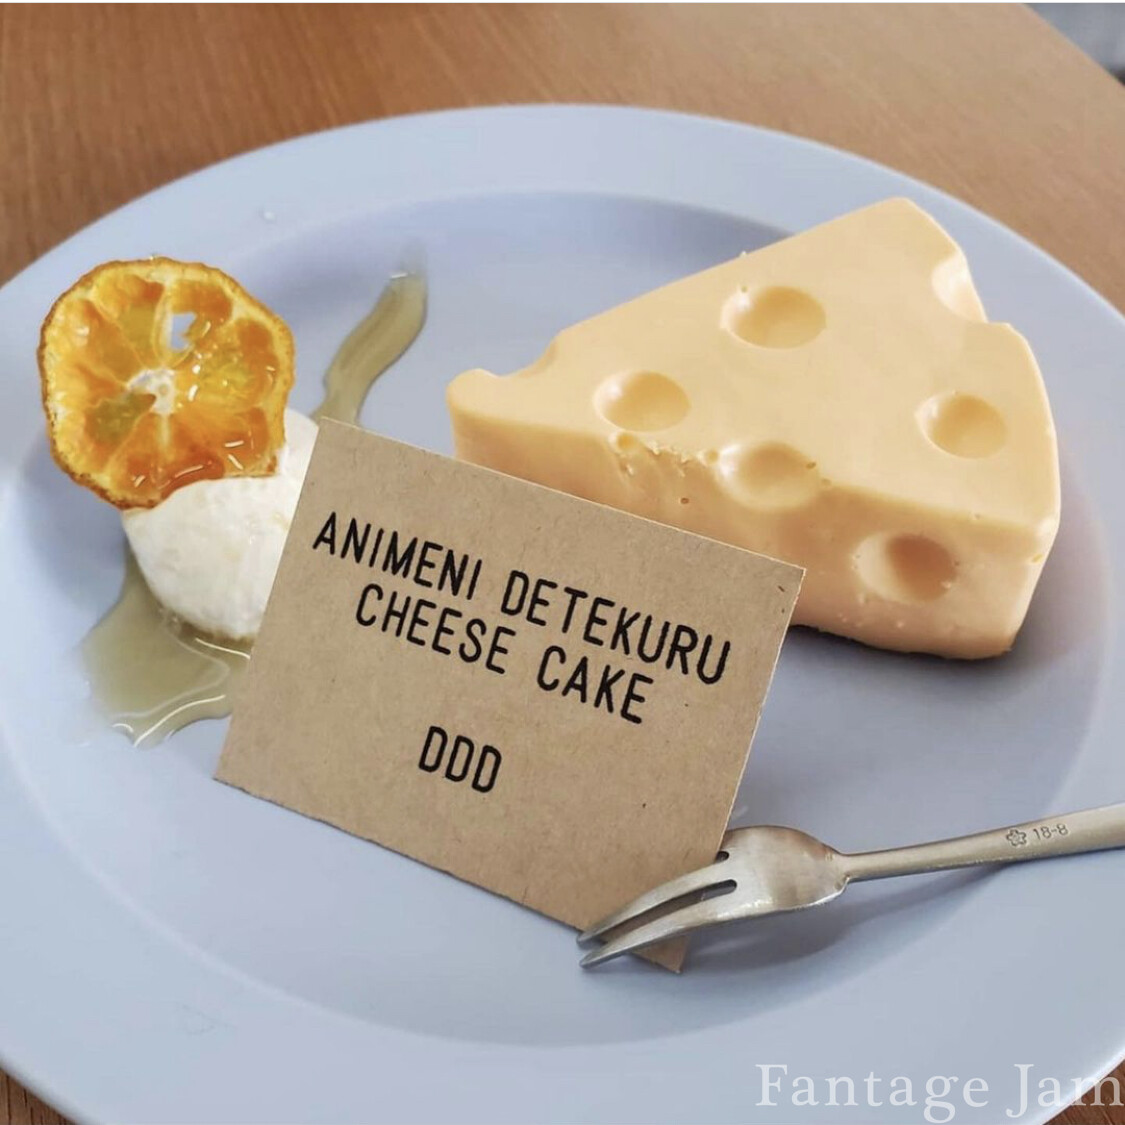 ANIMENI DETEKURU CHEESE CAKE